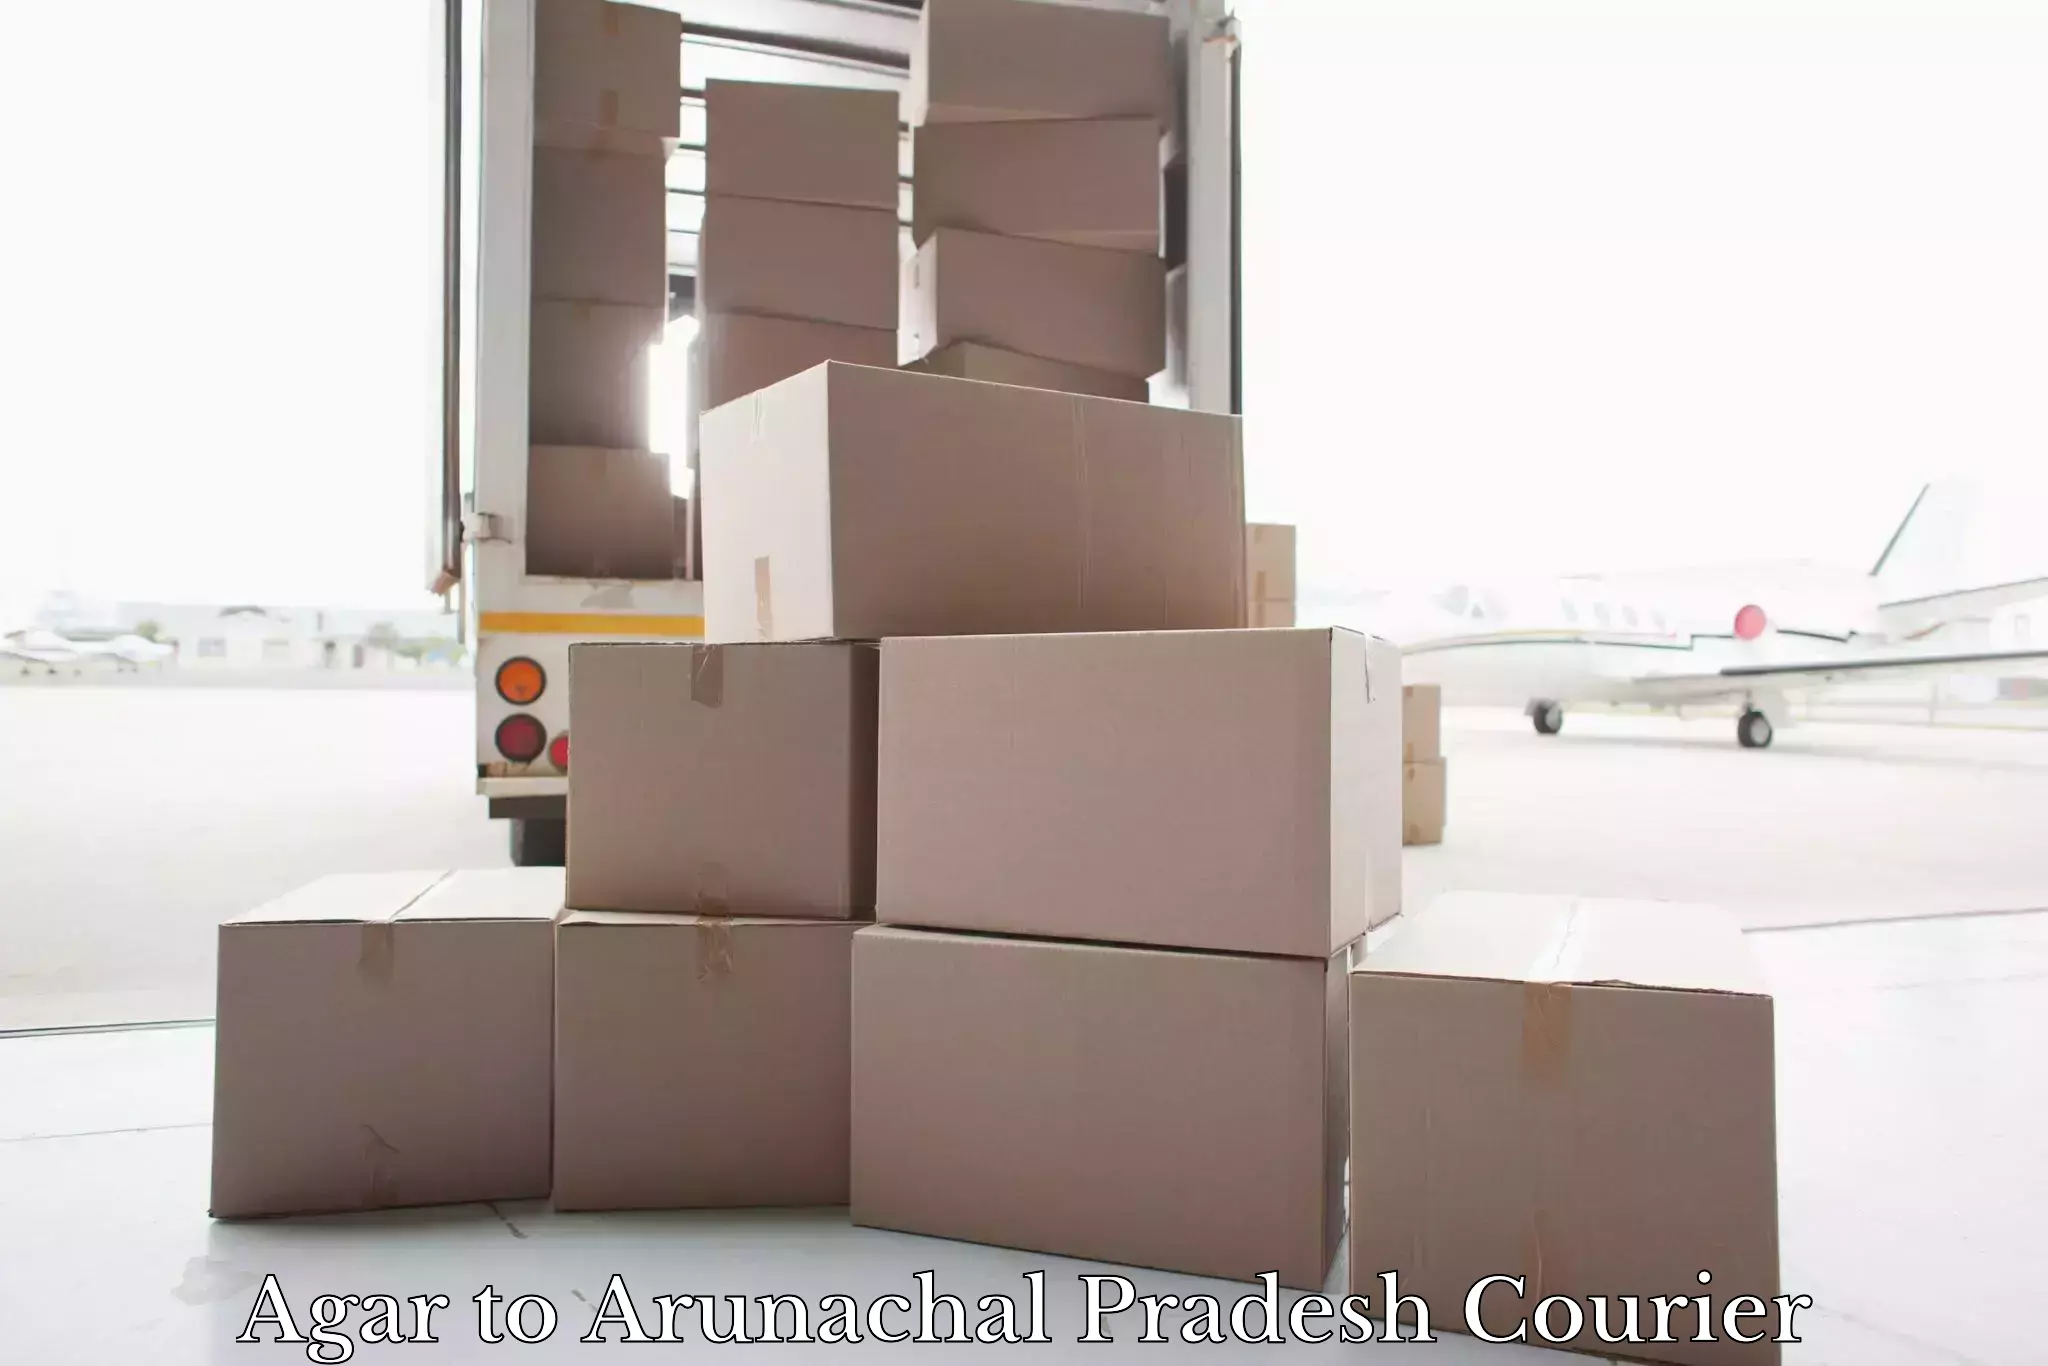 Luggage delivery system Agar to Arunachal Pradesh